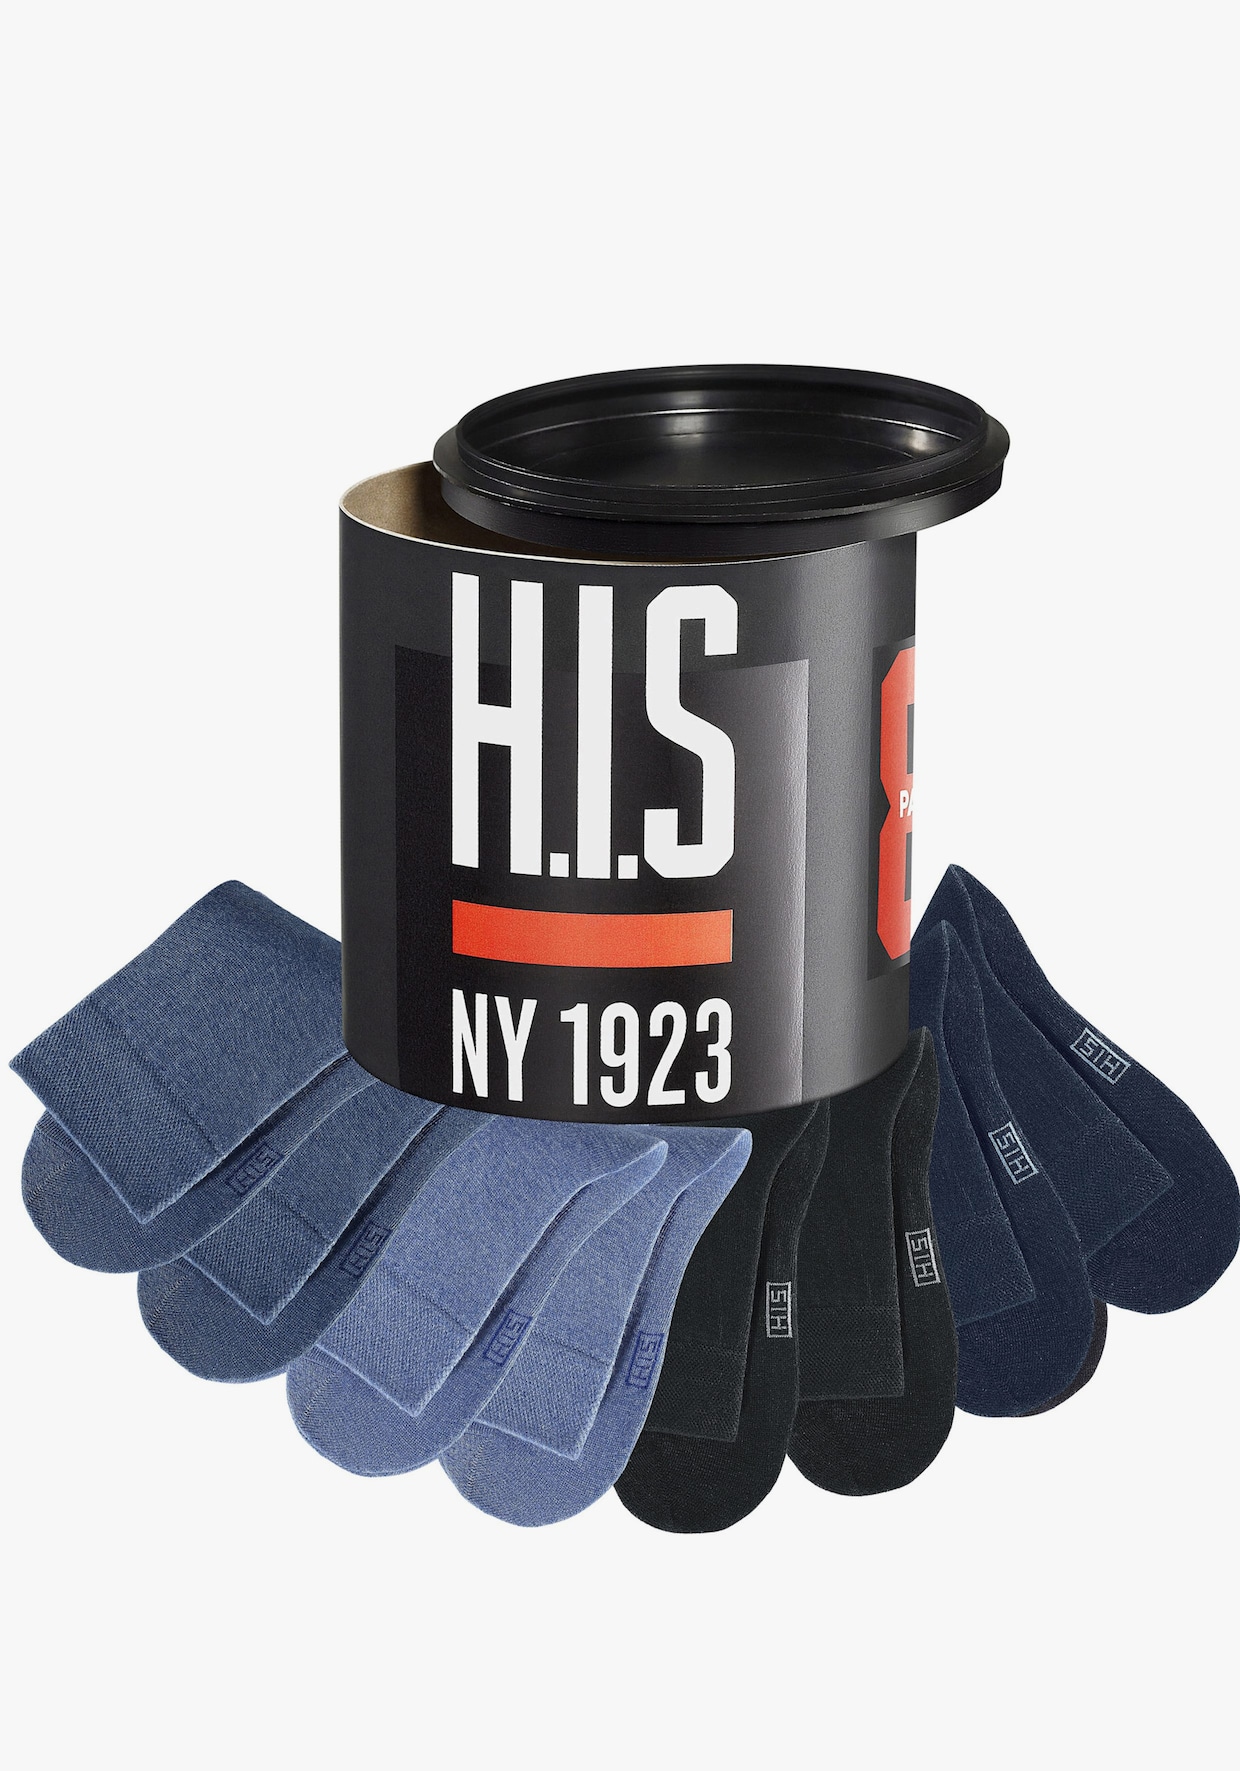 H.I.S Sokken - zwart/marine/jeans